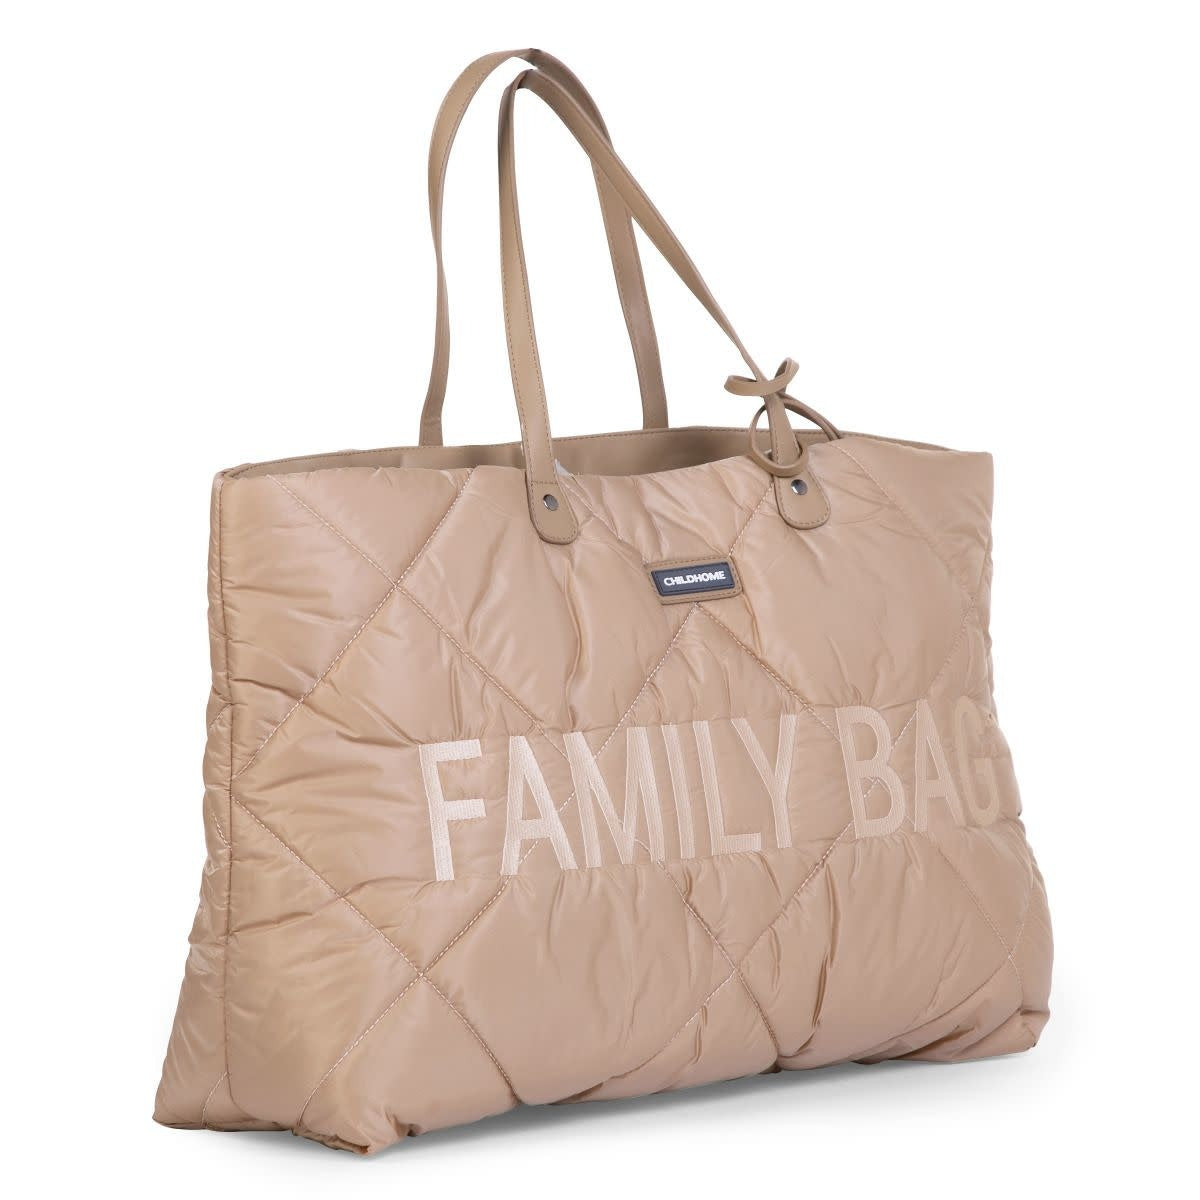 Family Bag Verzorgingstas - Gewatteerd - Beige